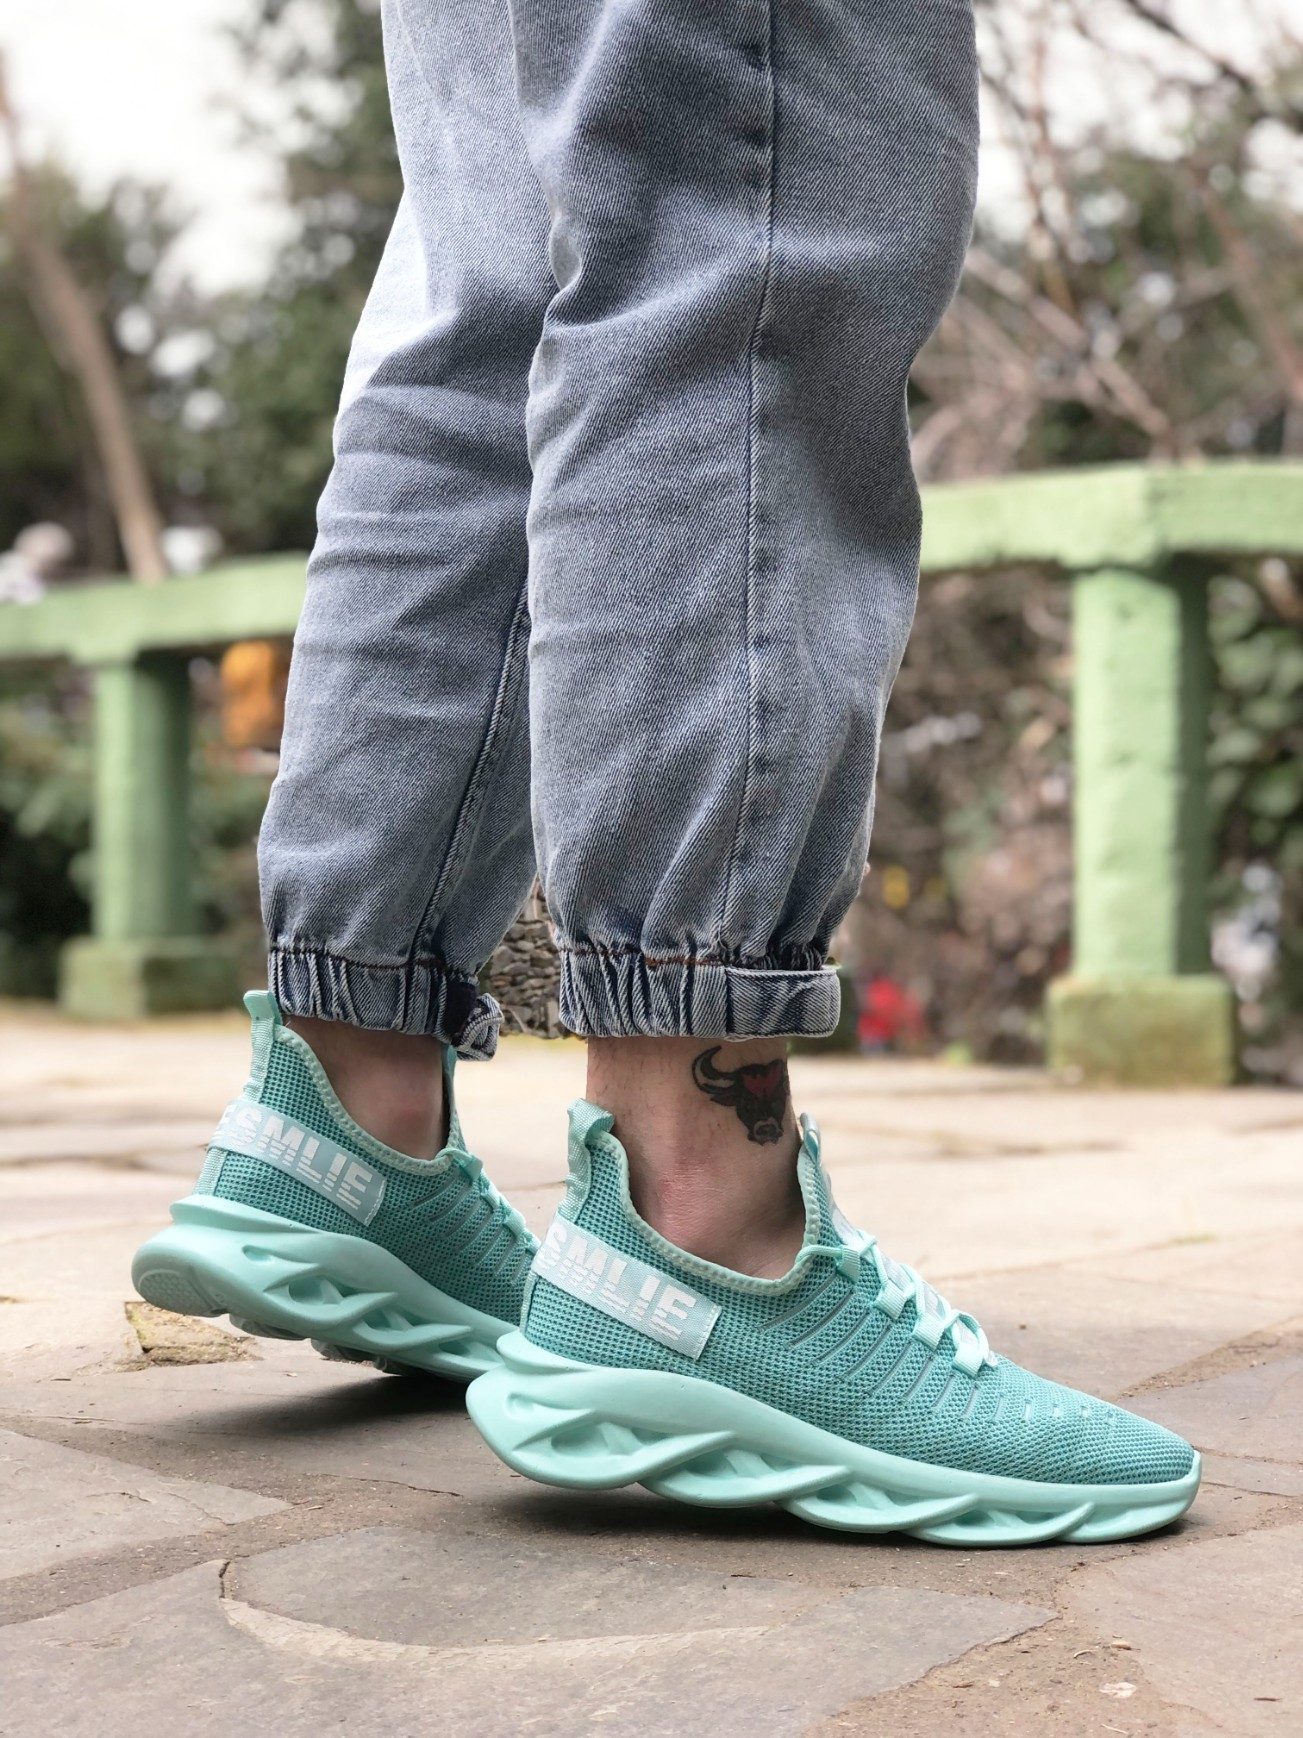 CLZ946 Phantom Yüksek Taban Tarz Sneakers Mint Yeşil Erkek Spor Ayakkabısı